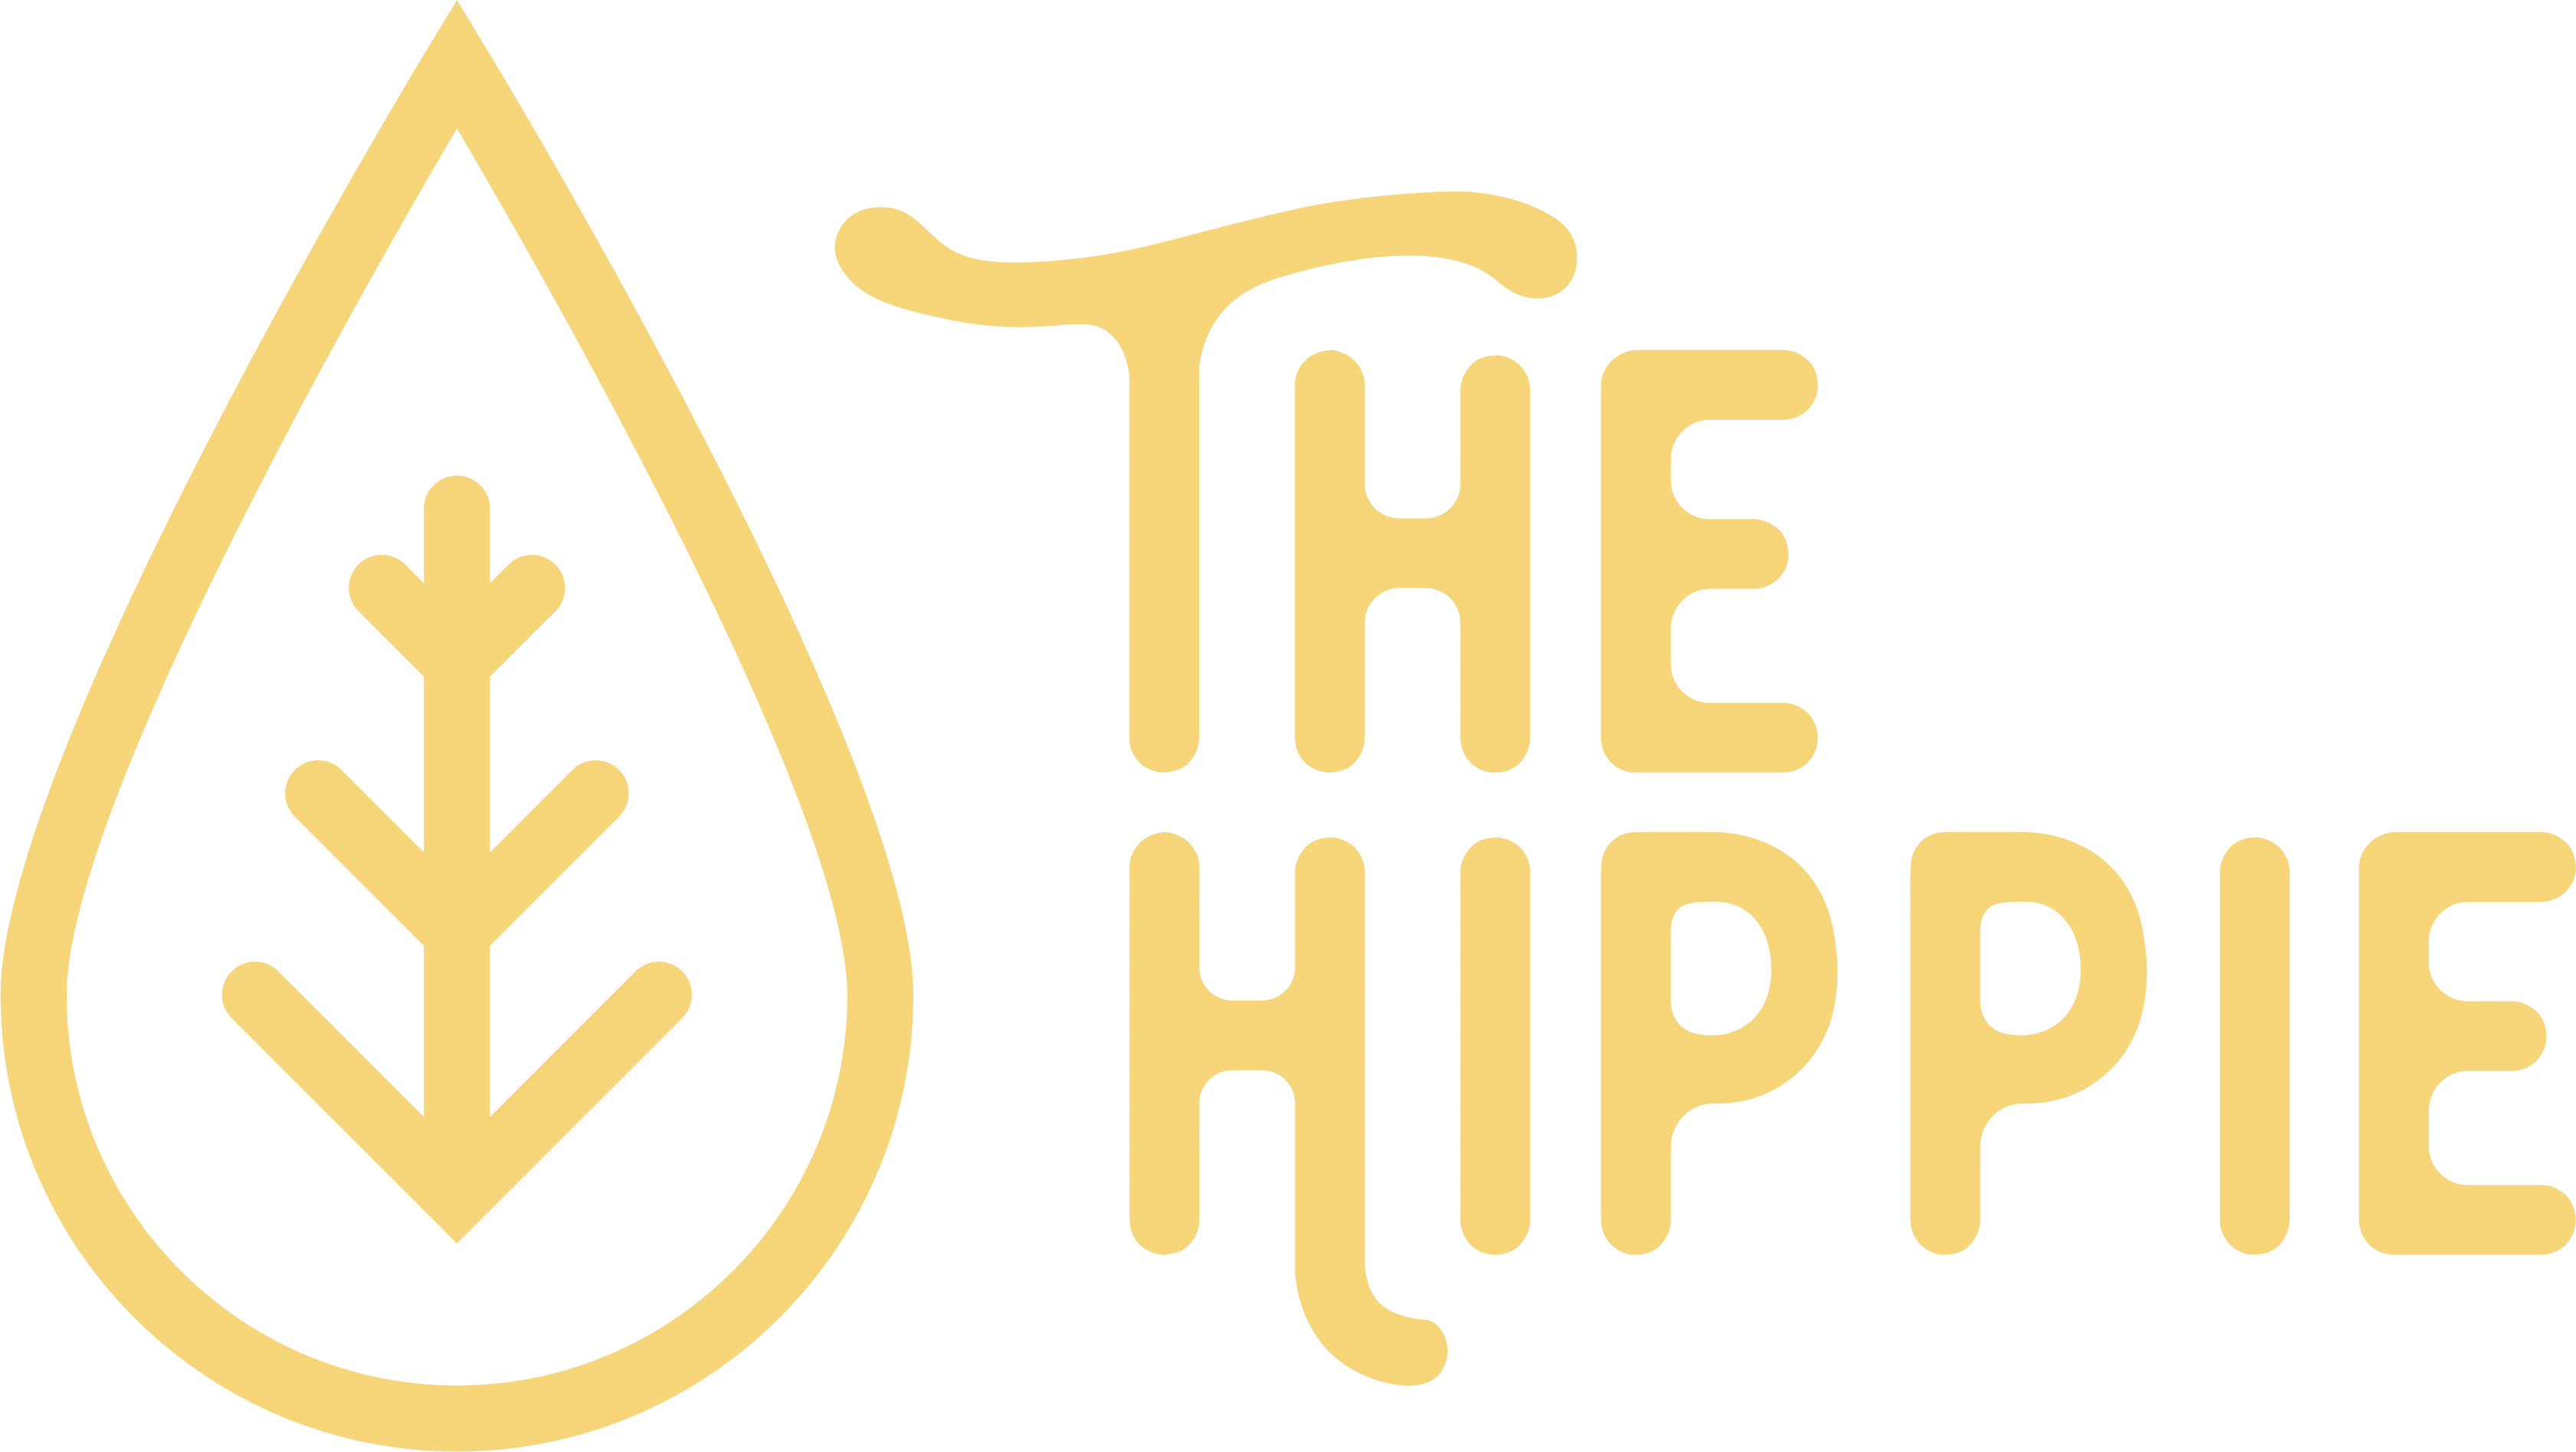 THE HIPPIE